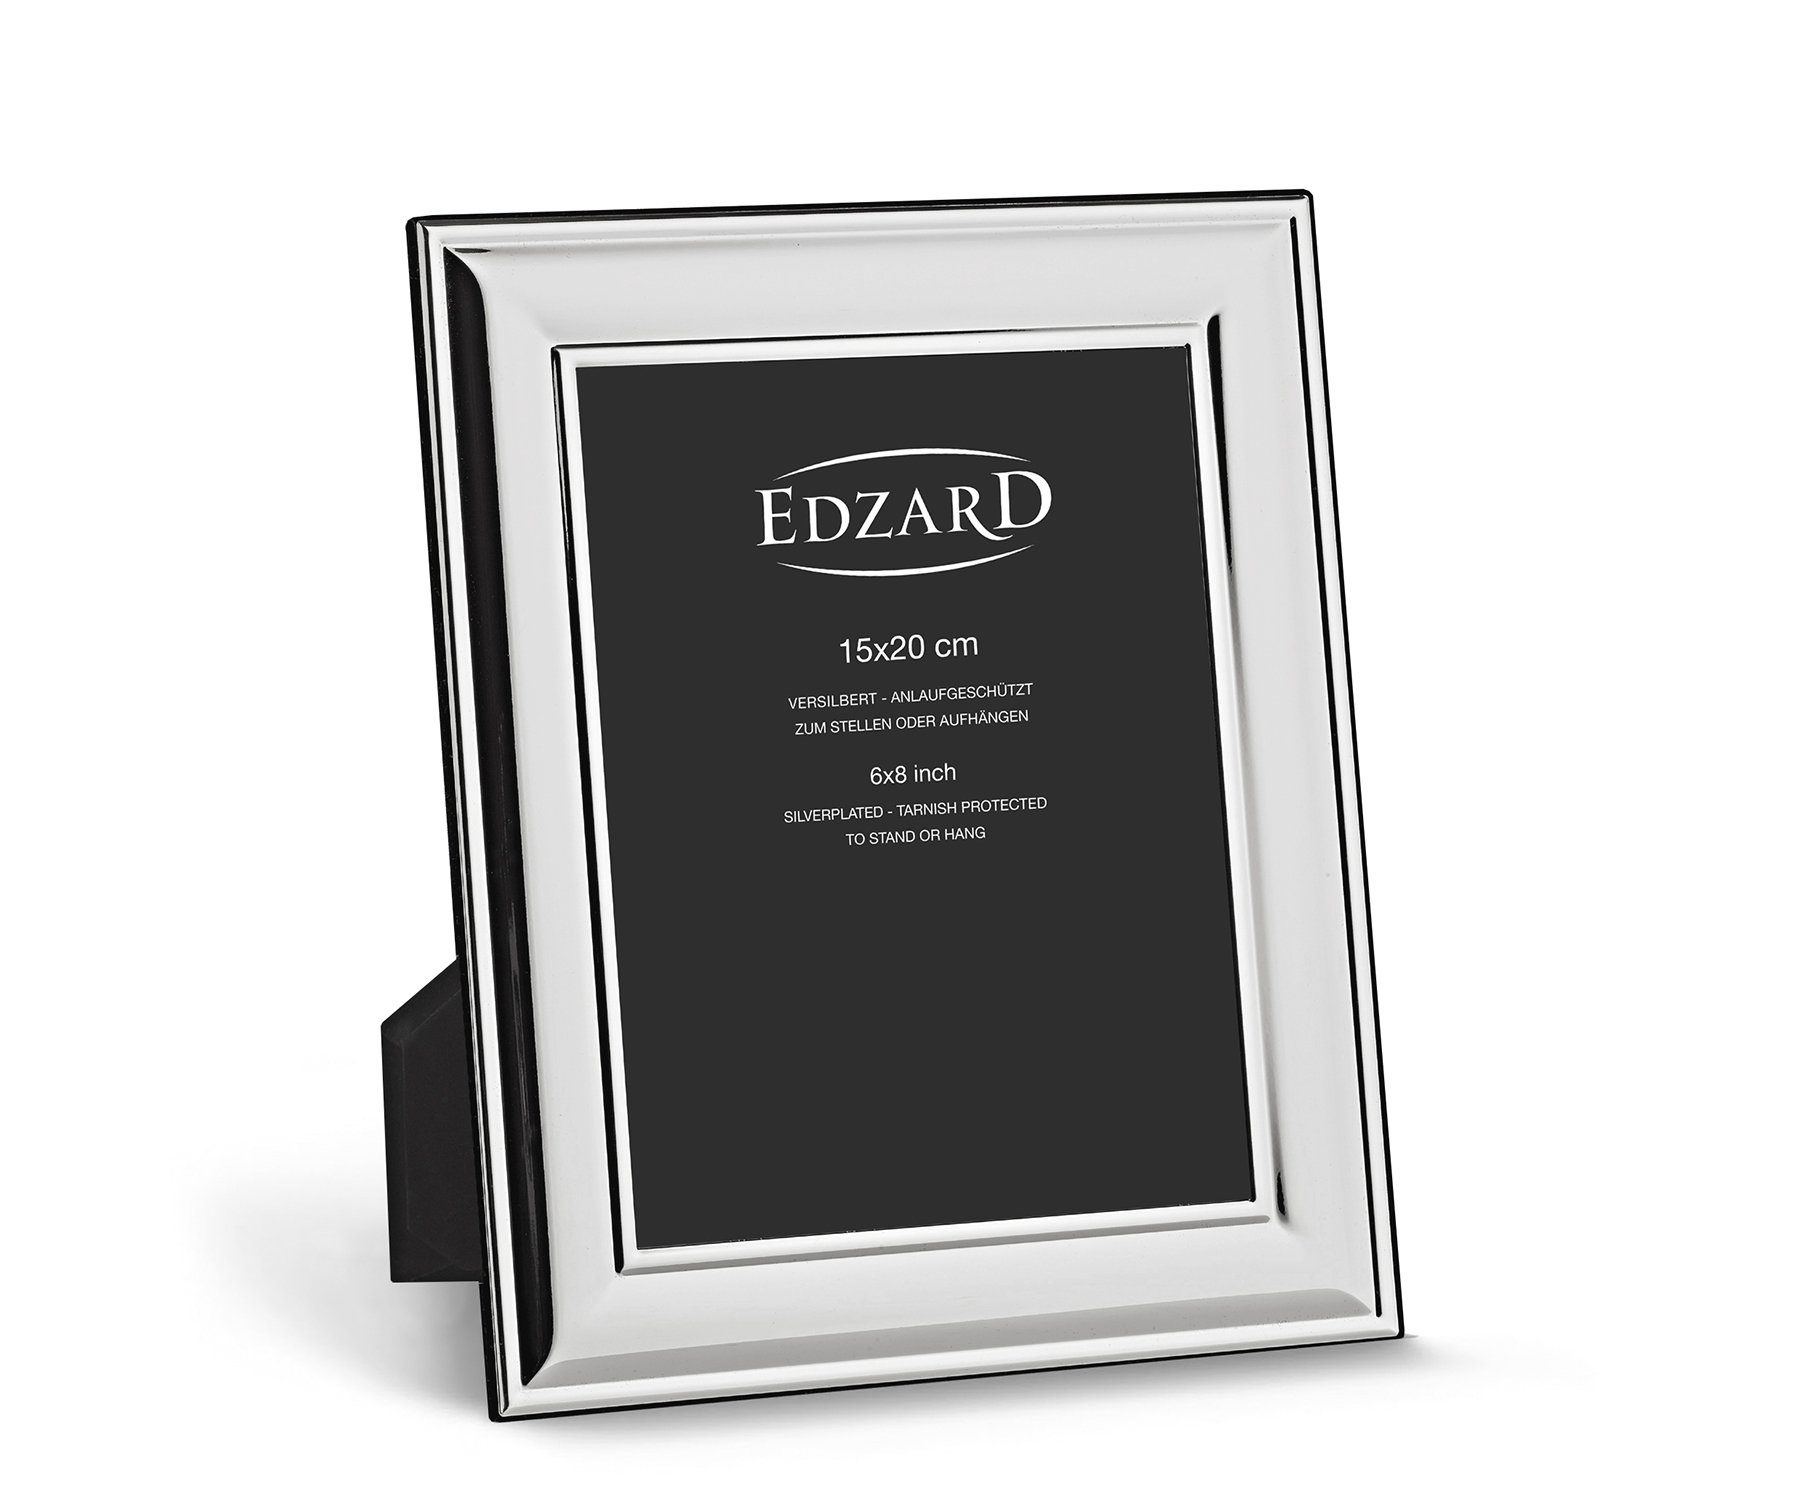 EDZARD Bilderrahmen Sunset, 15x20 anlaufgeschützt, Fotorahmen Bilder cm versilbert - und für